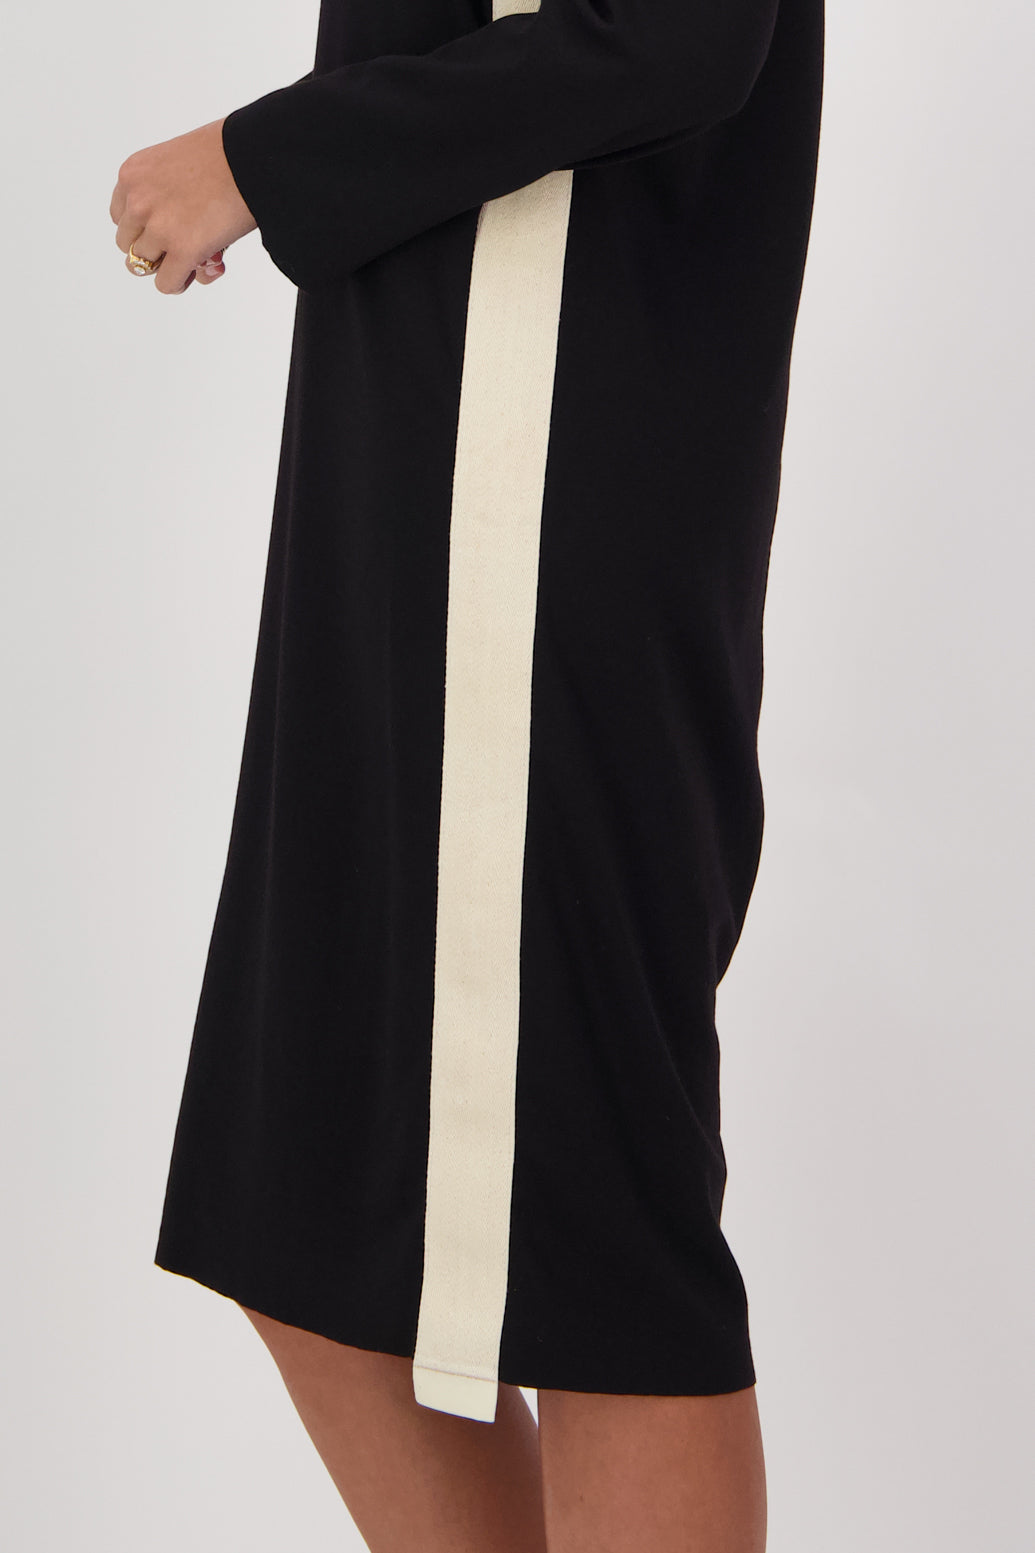 Cissy Blank Ponte Dress with Side Stripe